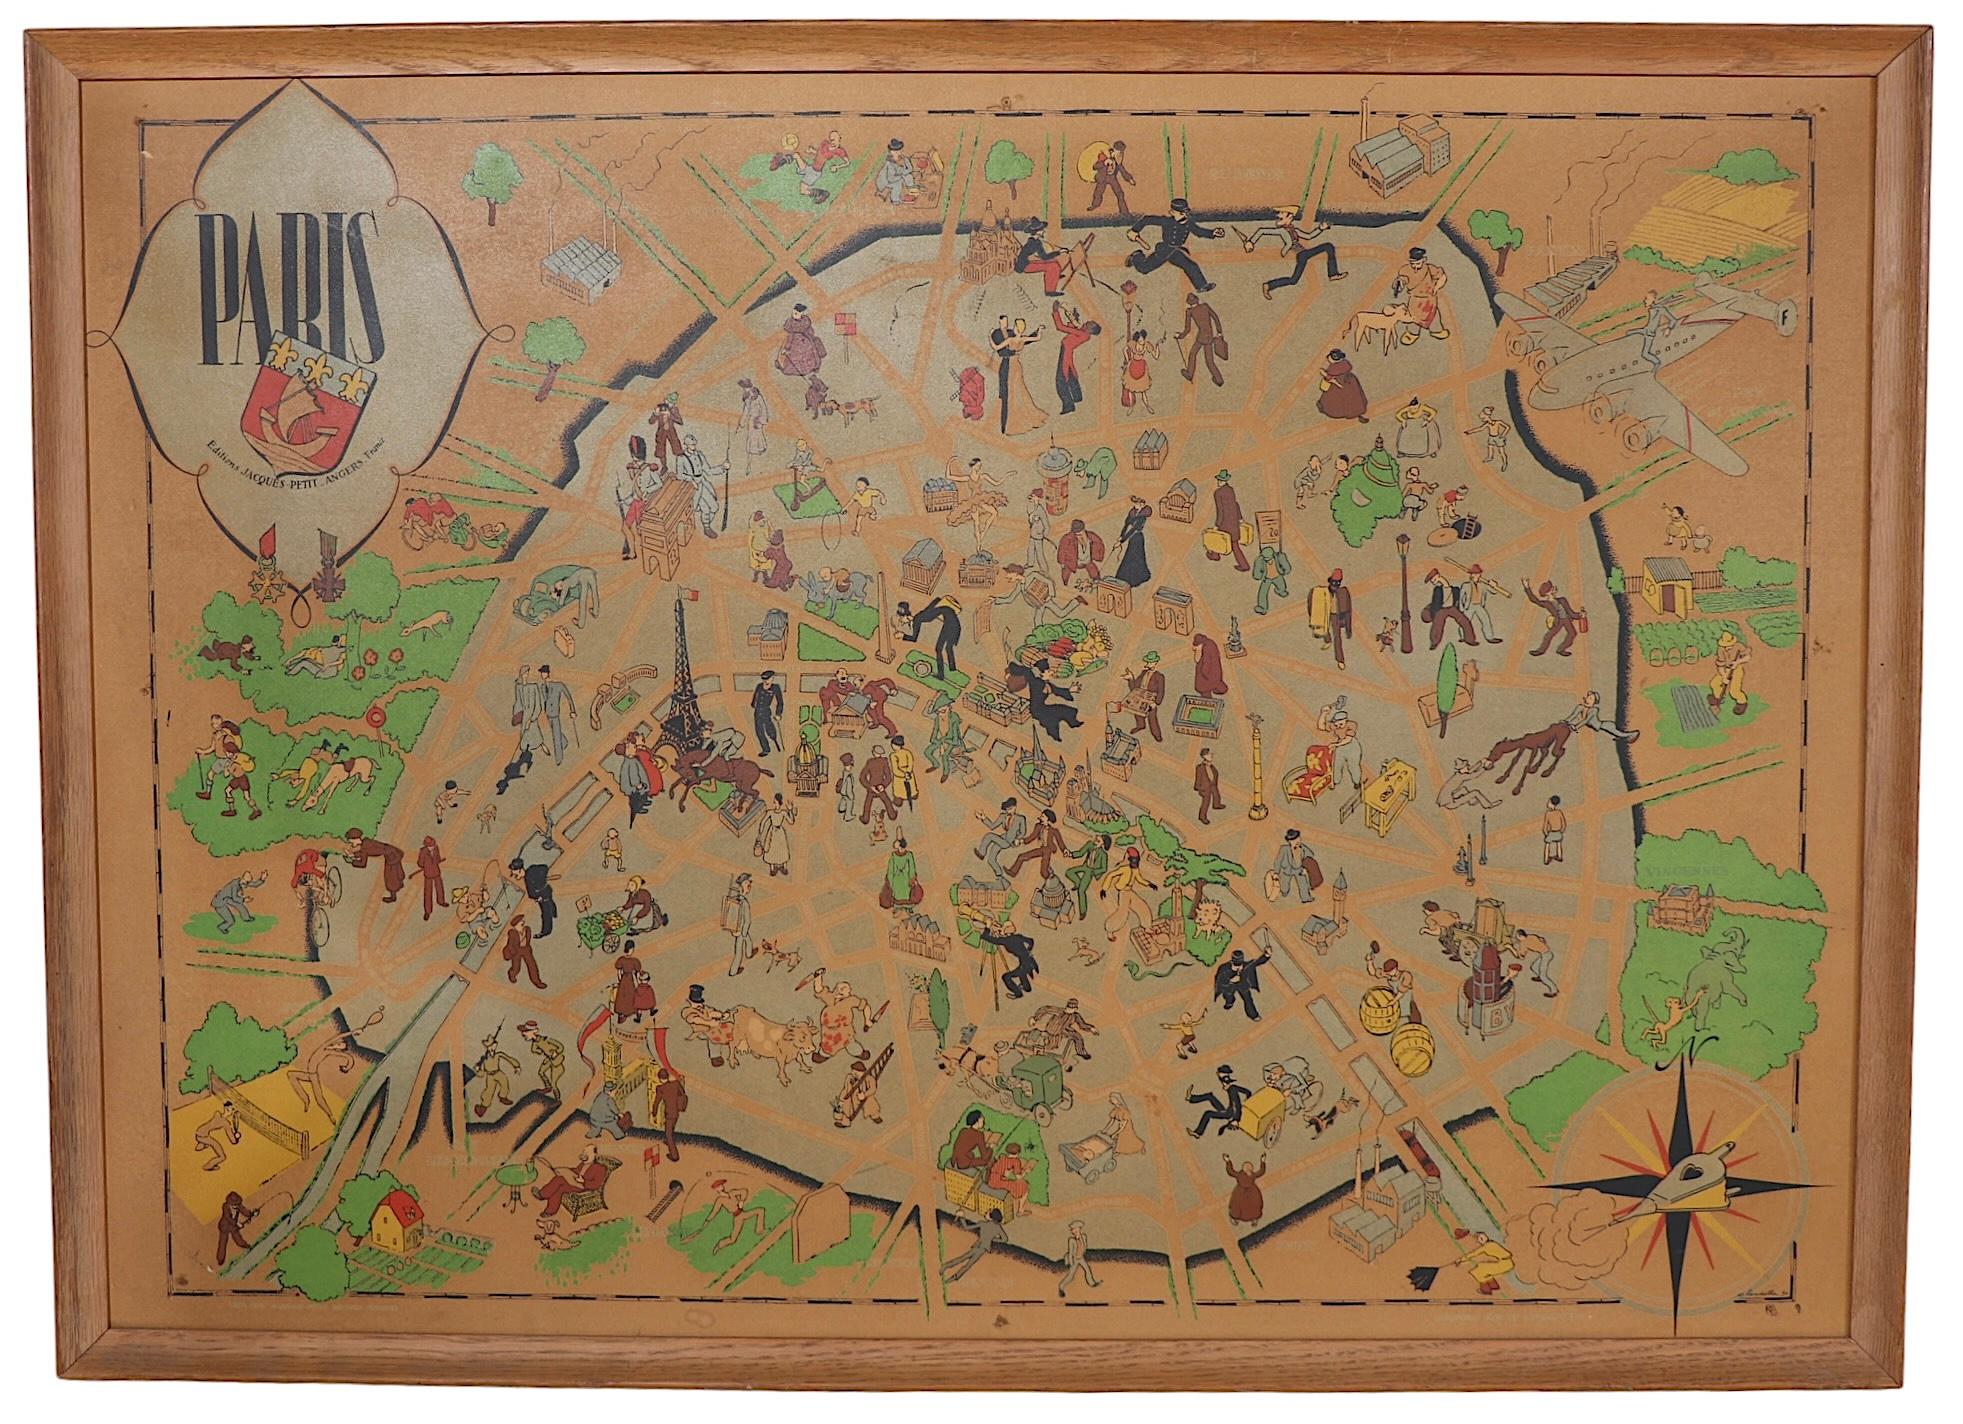 Art-Deco-Karte von Paris im Cartoon-Stil, möglicherweise von Arthur Zaidenberg. Die Karte enthält witzige Anspielungen auf den Pariser Lebensstil sowie Zeichnungen von bedeutenden Wahrzeichen,  circa 1930er Jahre. Dieses Exemplar ist in sehr gutem,